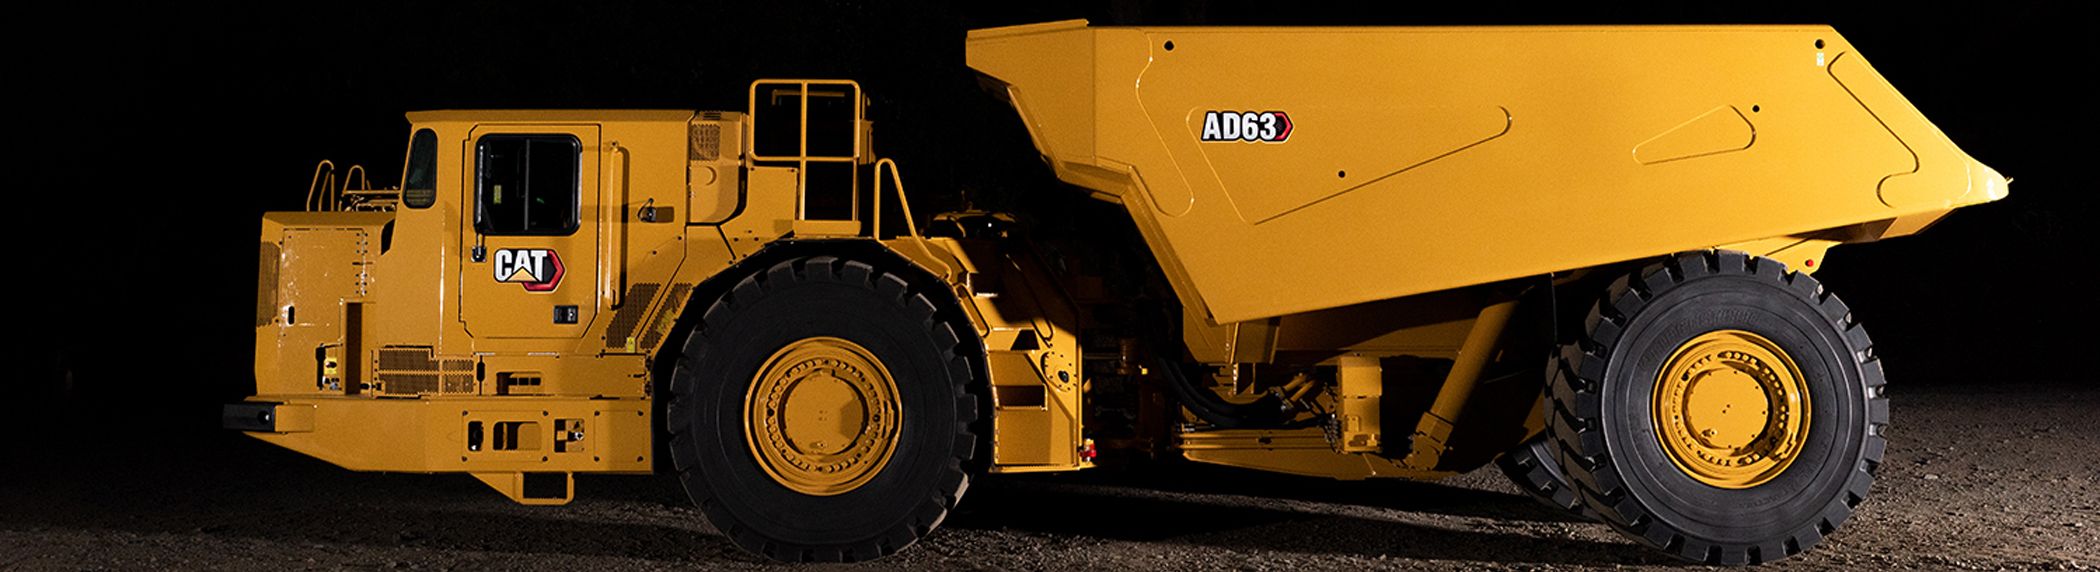 Caterpillar apresenta novo caminhão articulado subterrâneo AD63